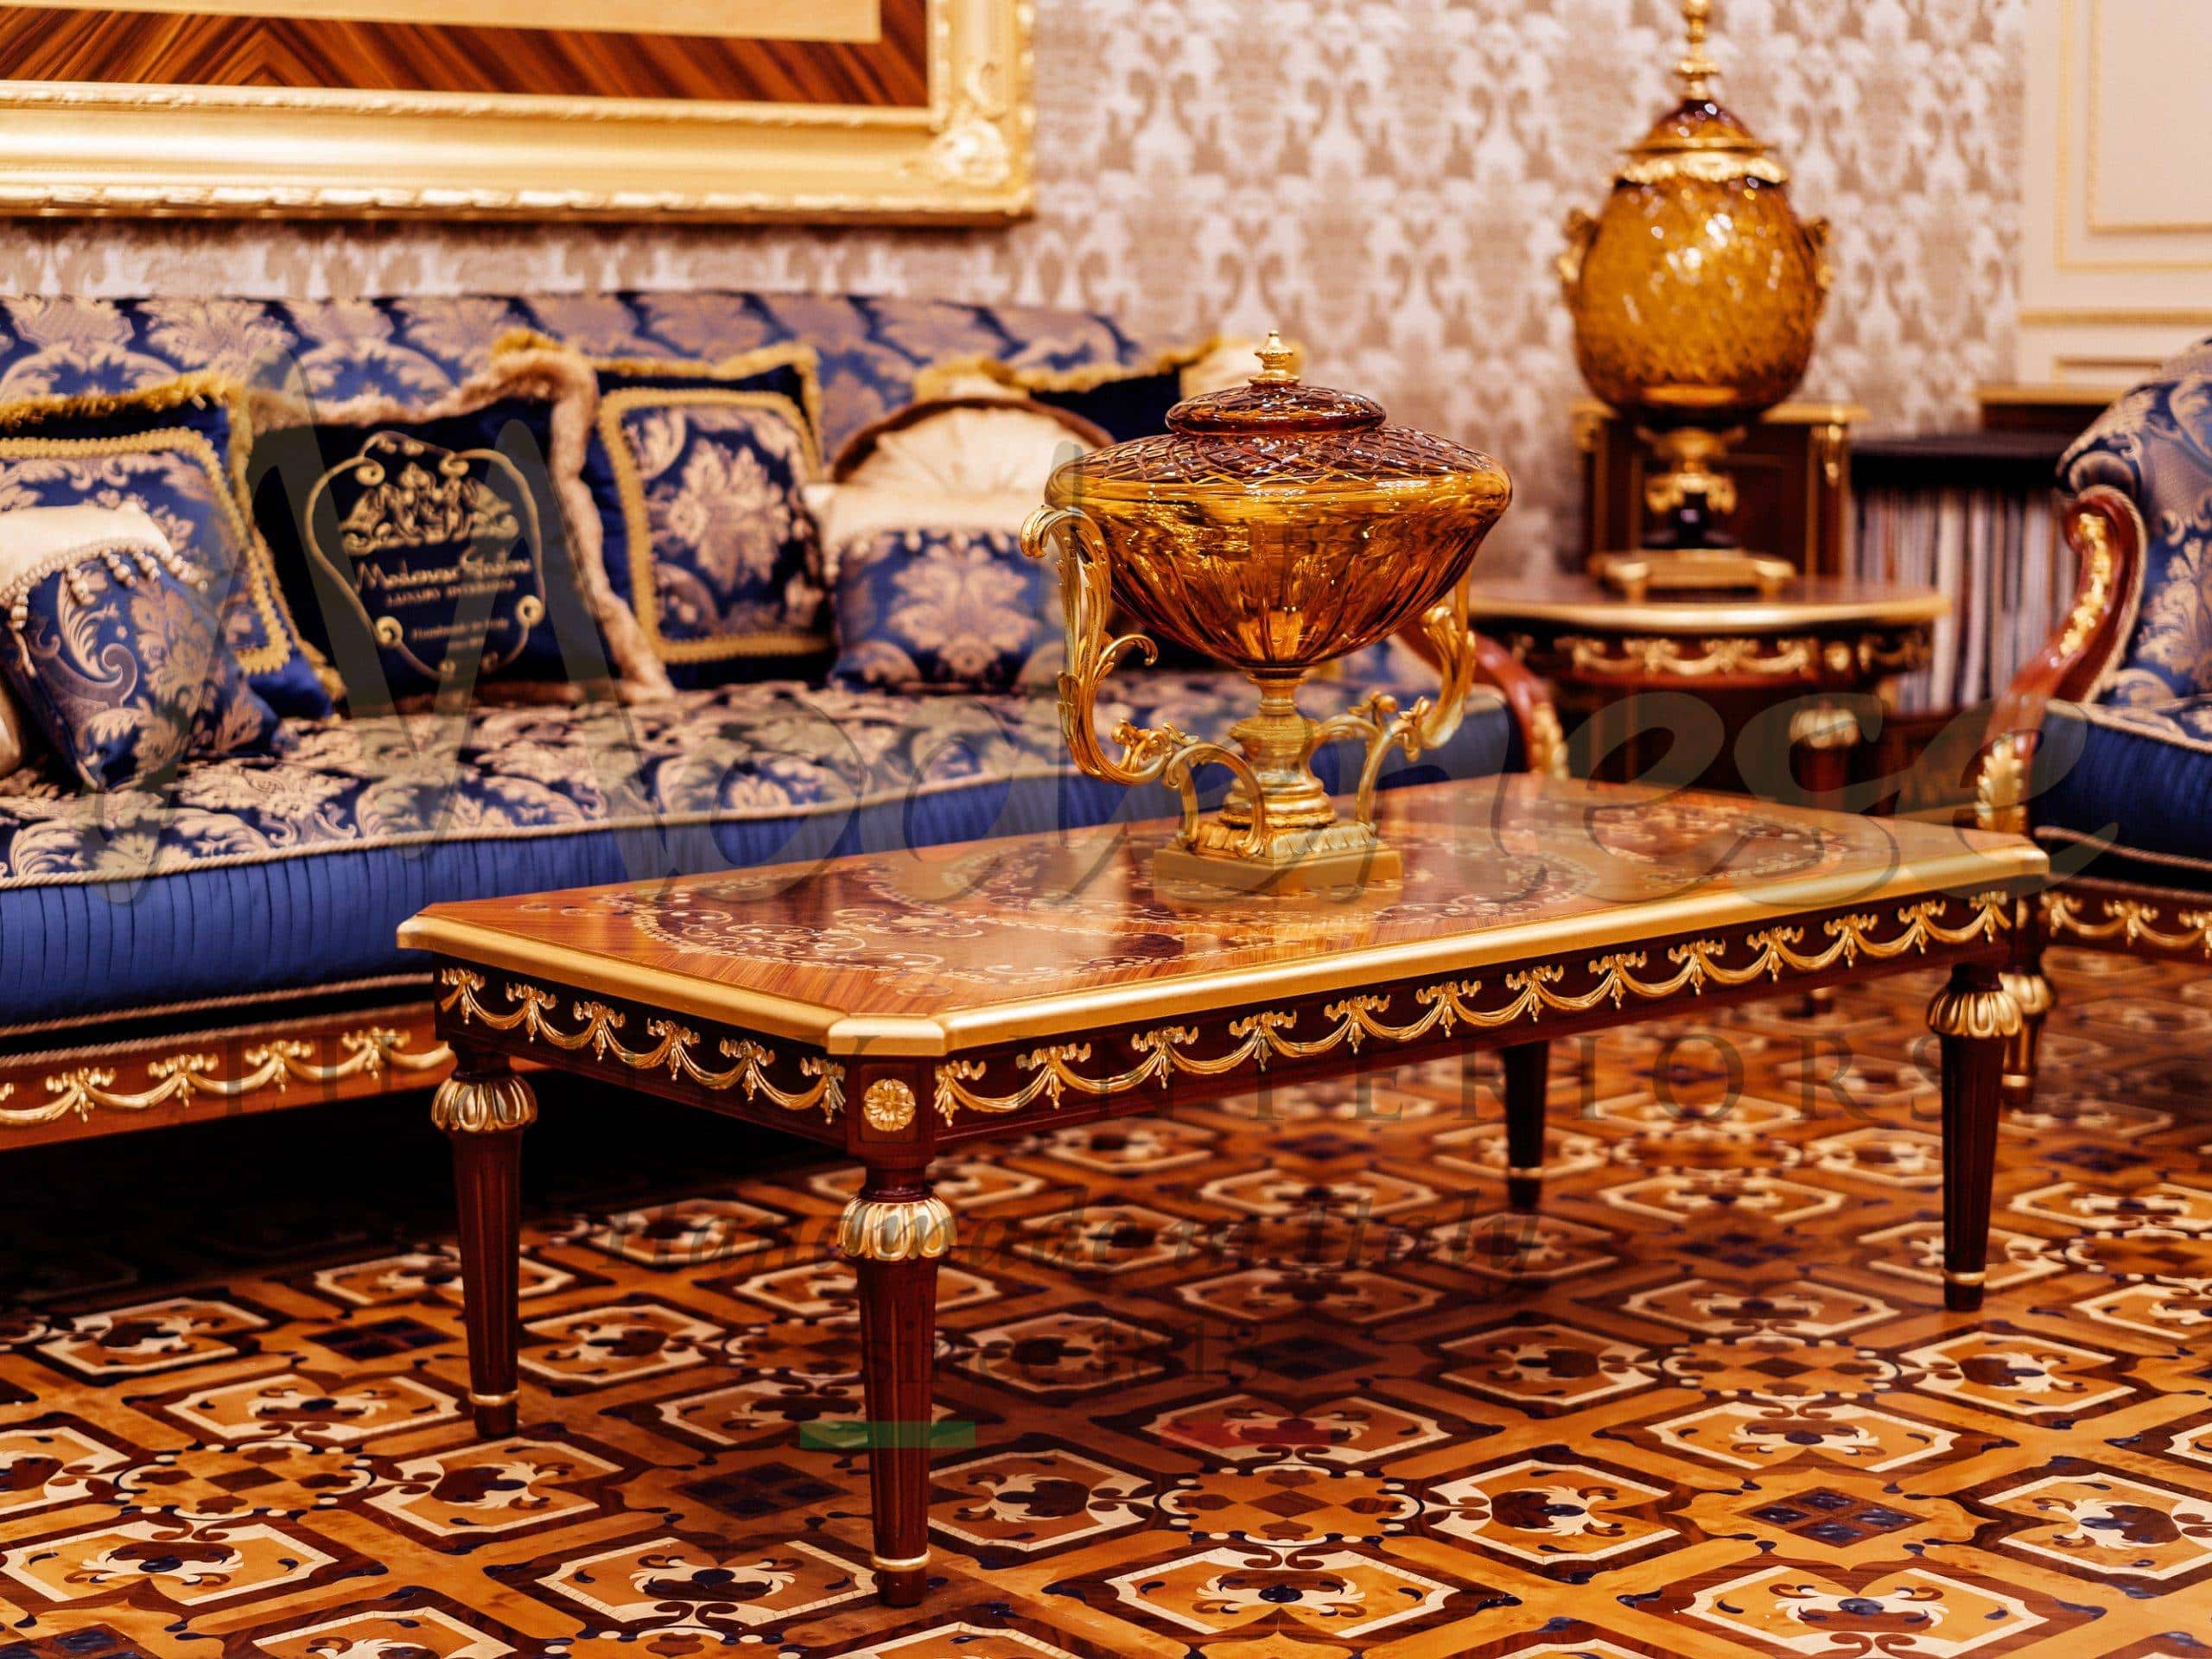 interiérový design výběr služeb italský design vkusný luxus klasika na míru rafinované doplňky elegantní dekorace pro krlovské rezidenční projekty barokní detaily zlato zlatý opulentní desig